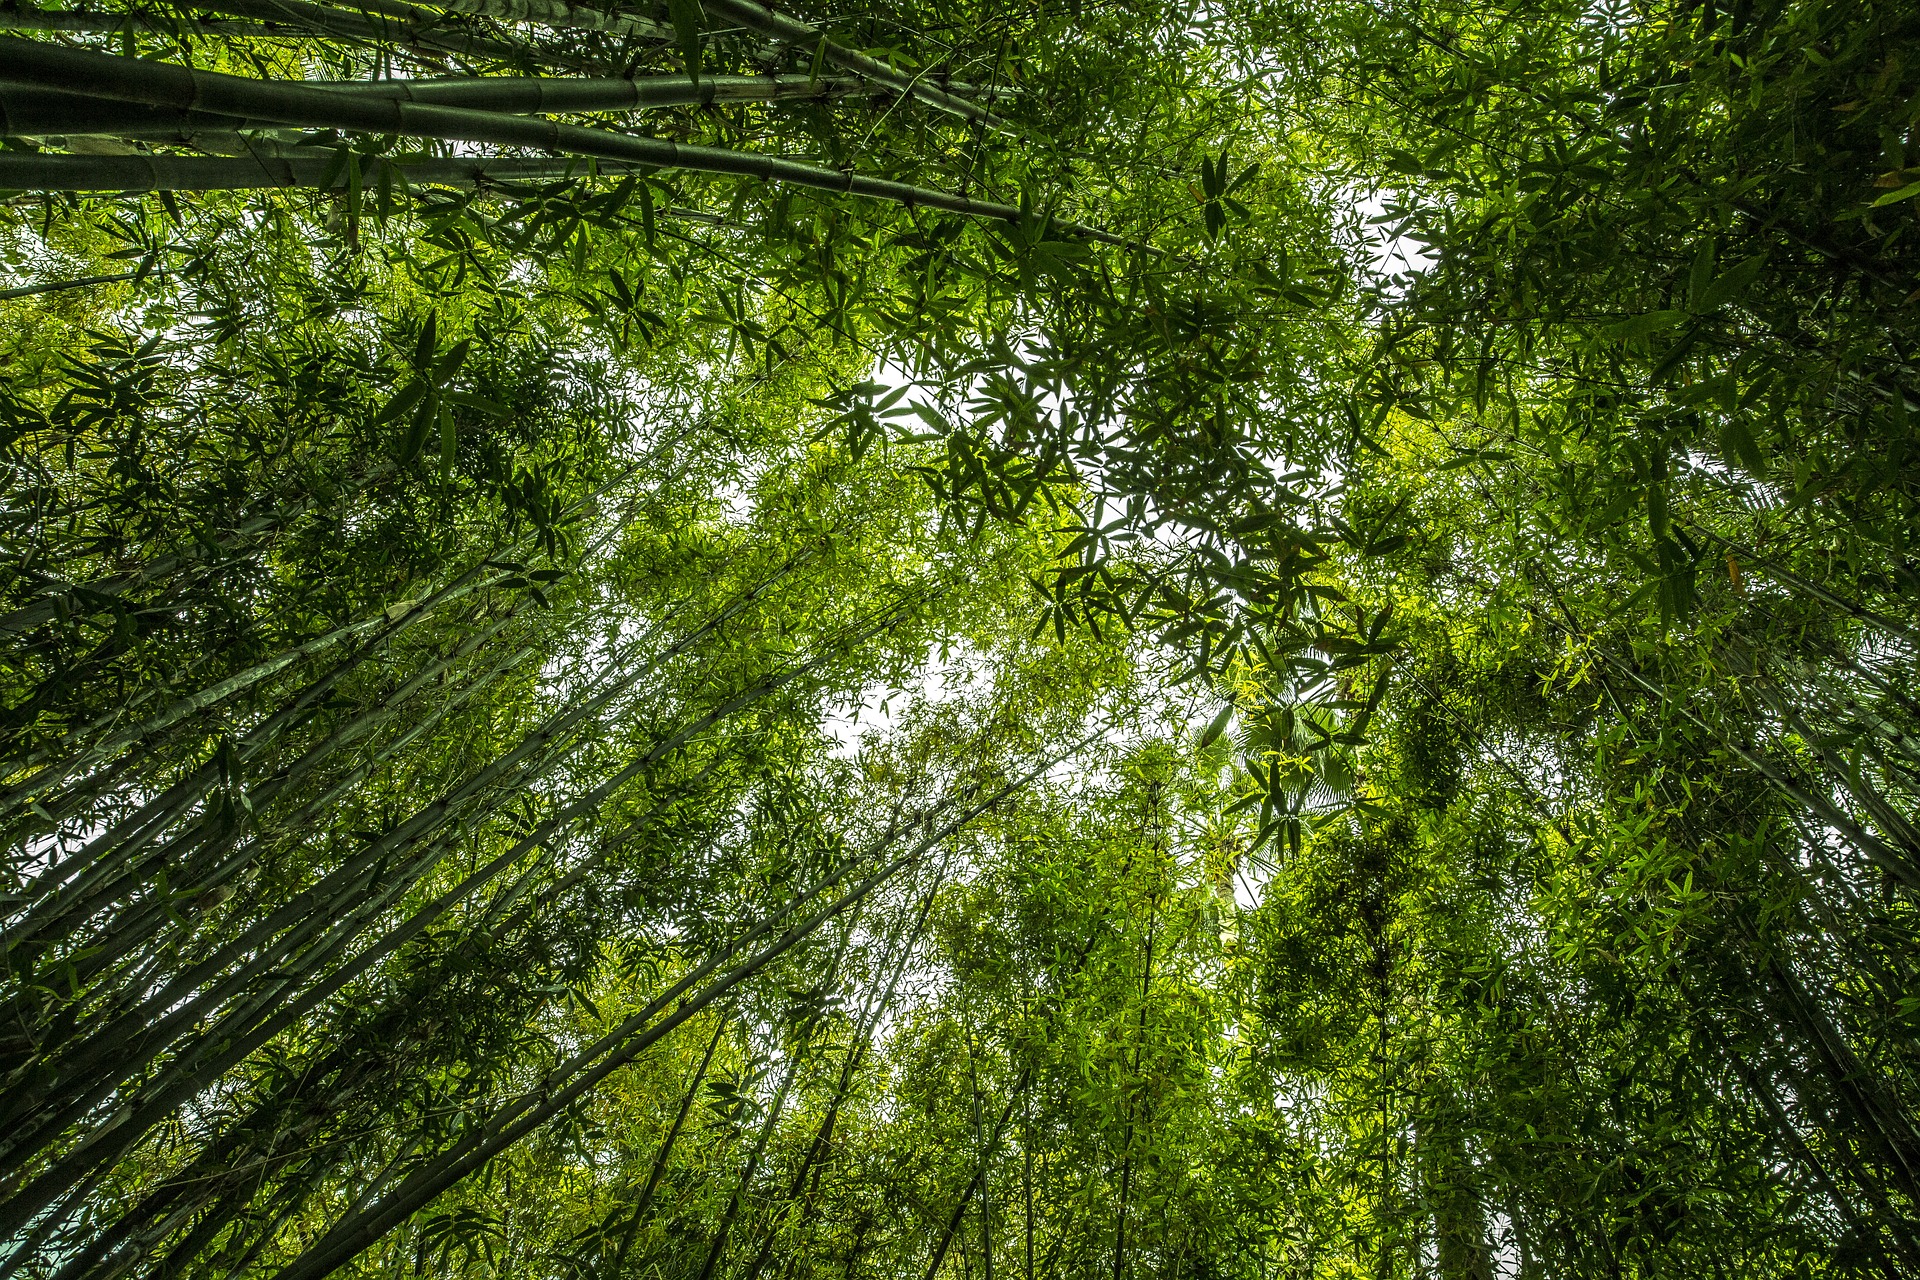 The Bamboo Forests of Banswara